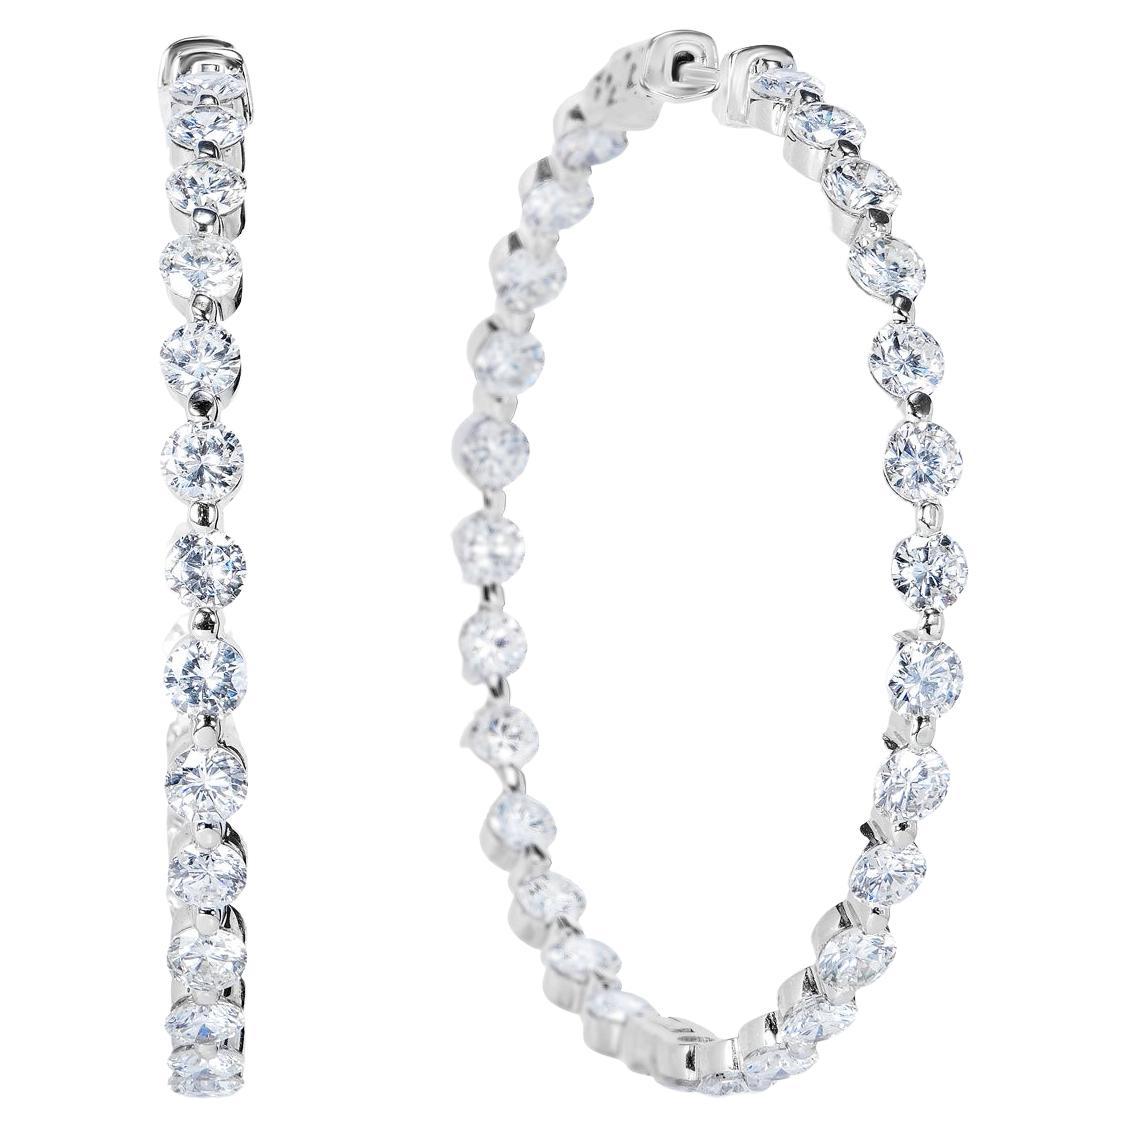 10 Carat Round Brilliant Diamond Hoop Earrings Certified